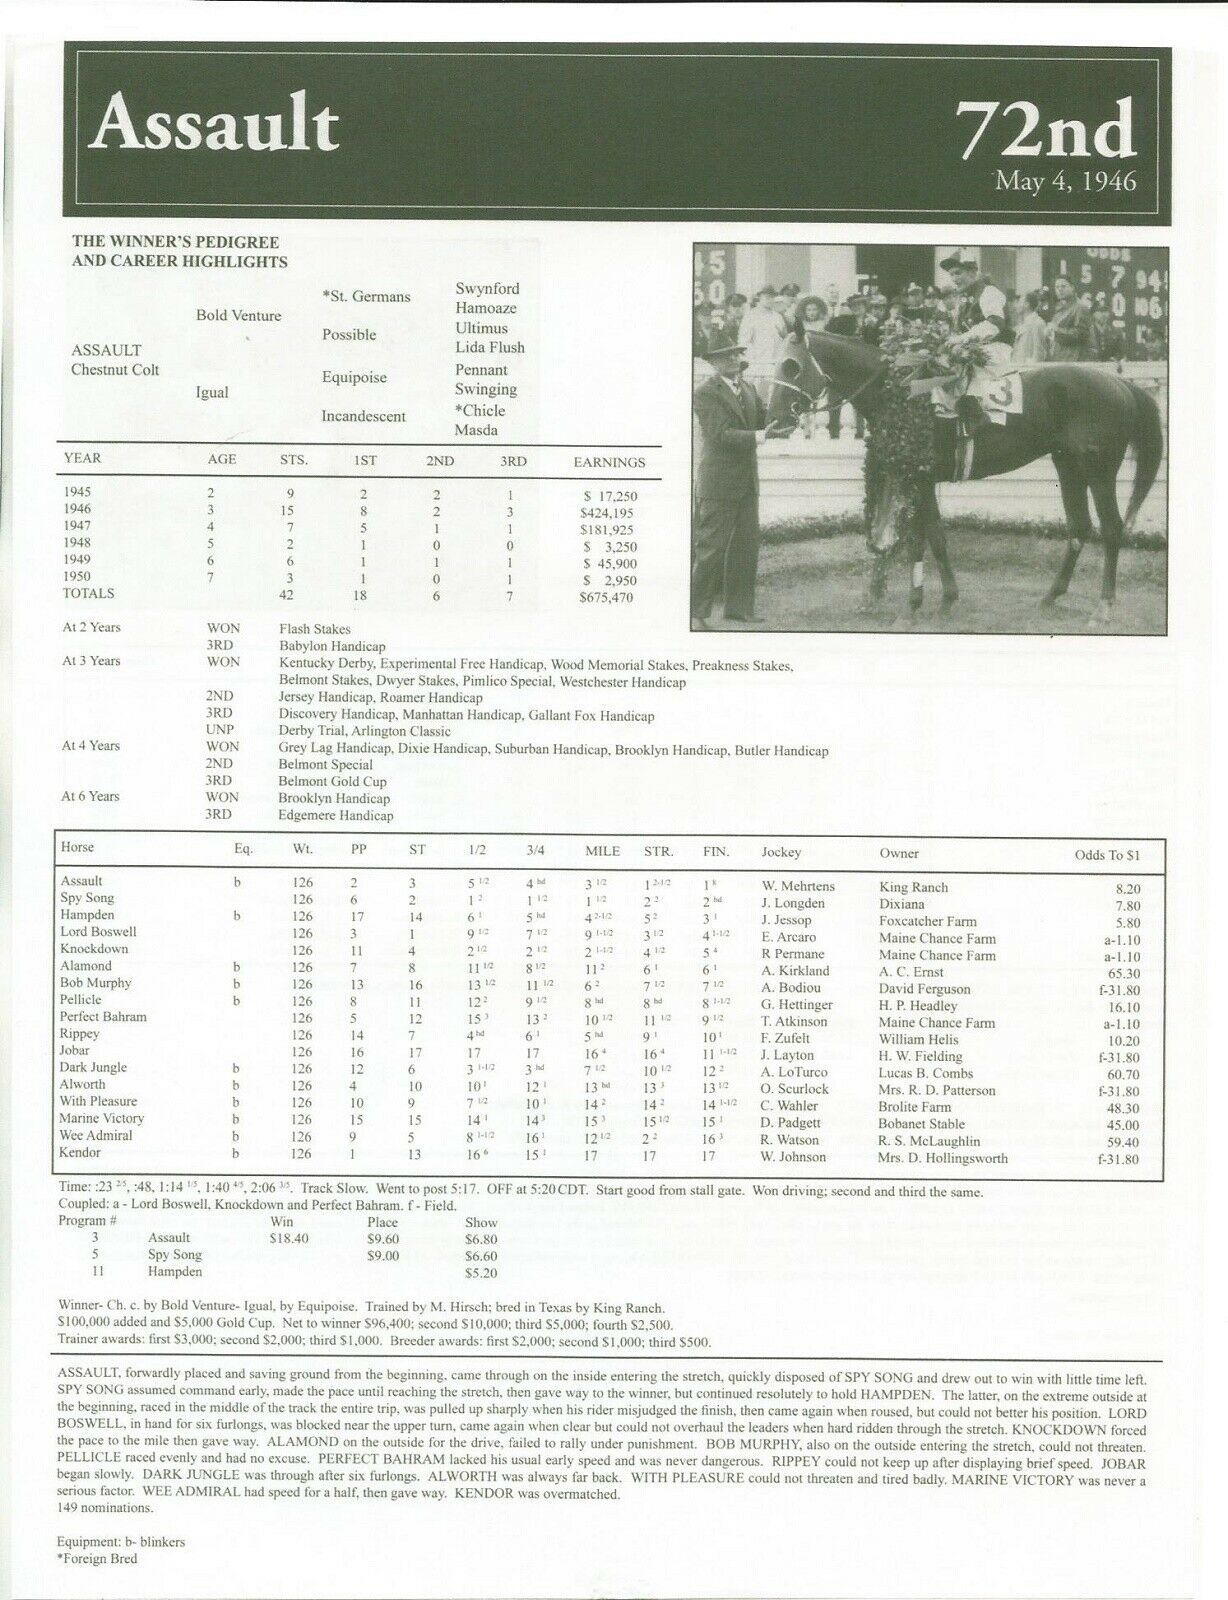 1946 ASSAULT Kentucky Derby Race Chart, Pedigree & Career